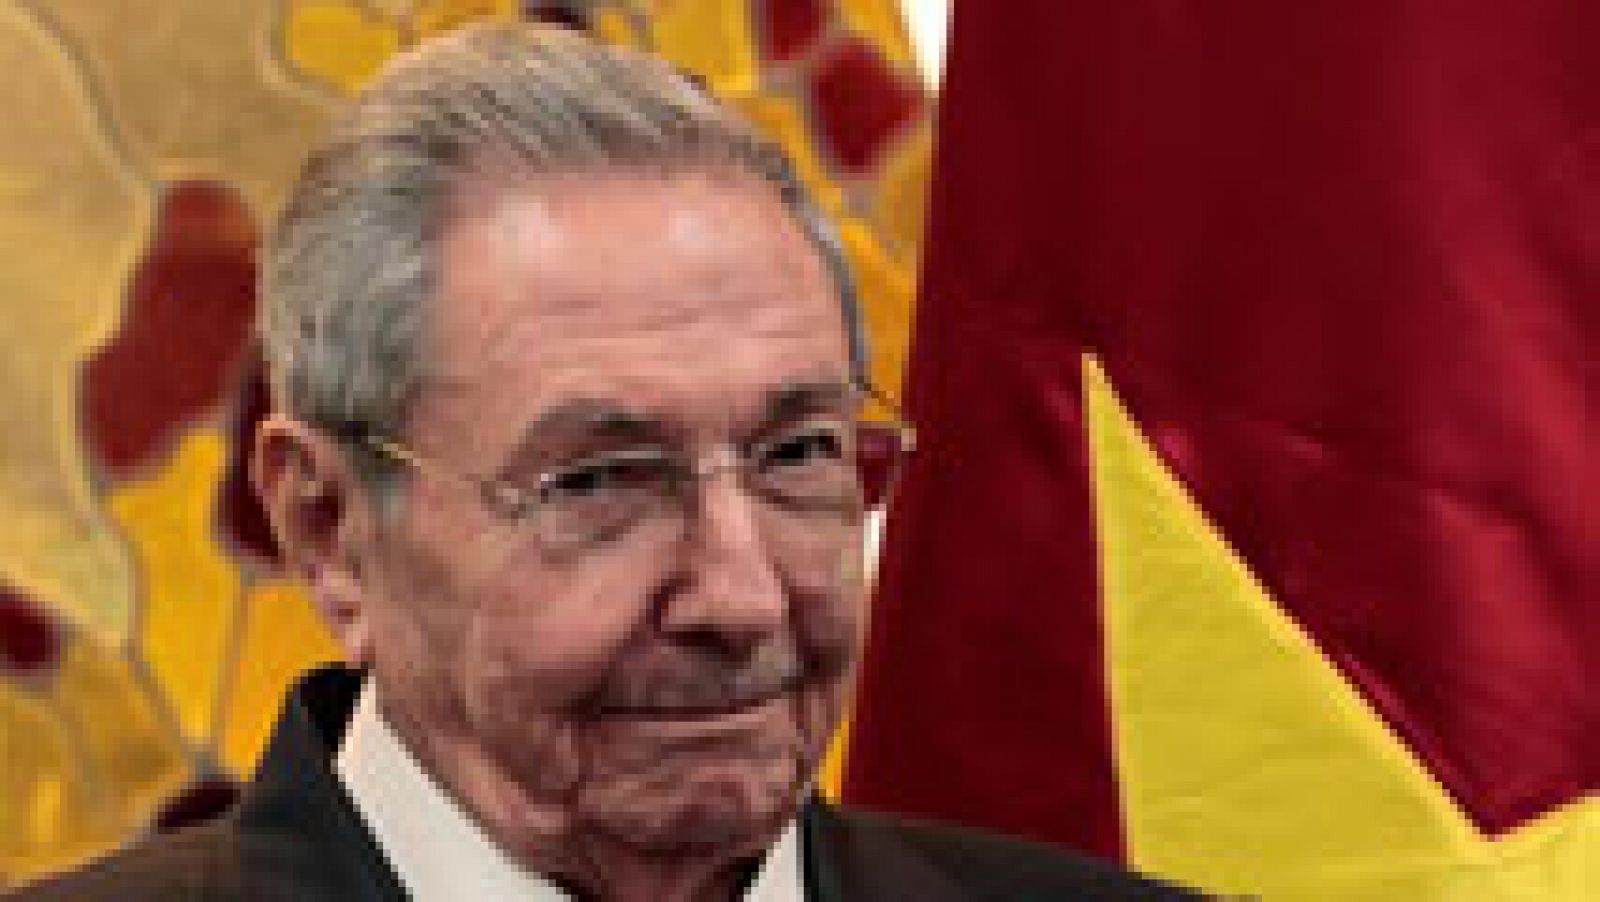 Los cambios en Cuba tras la llegada de Raúl Castro a la Presidencia